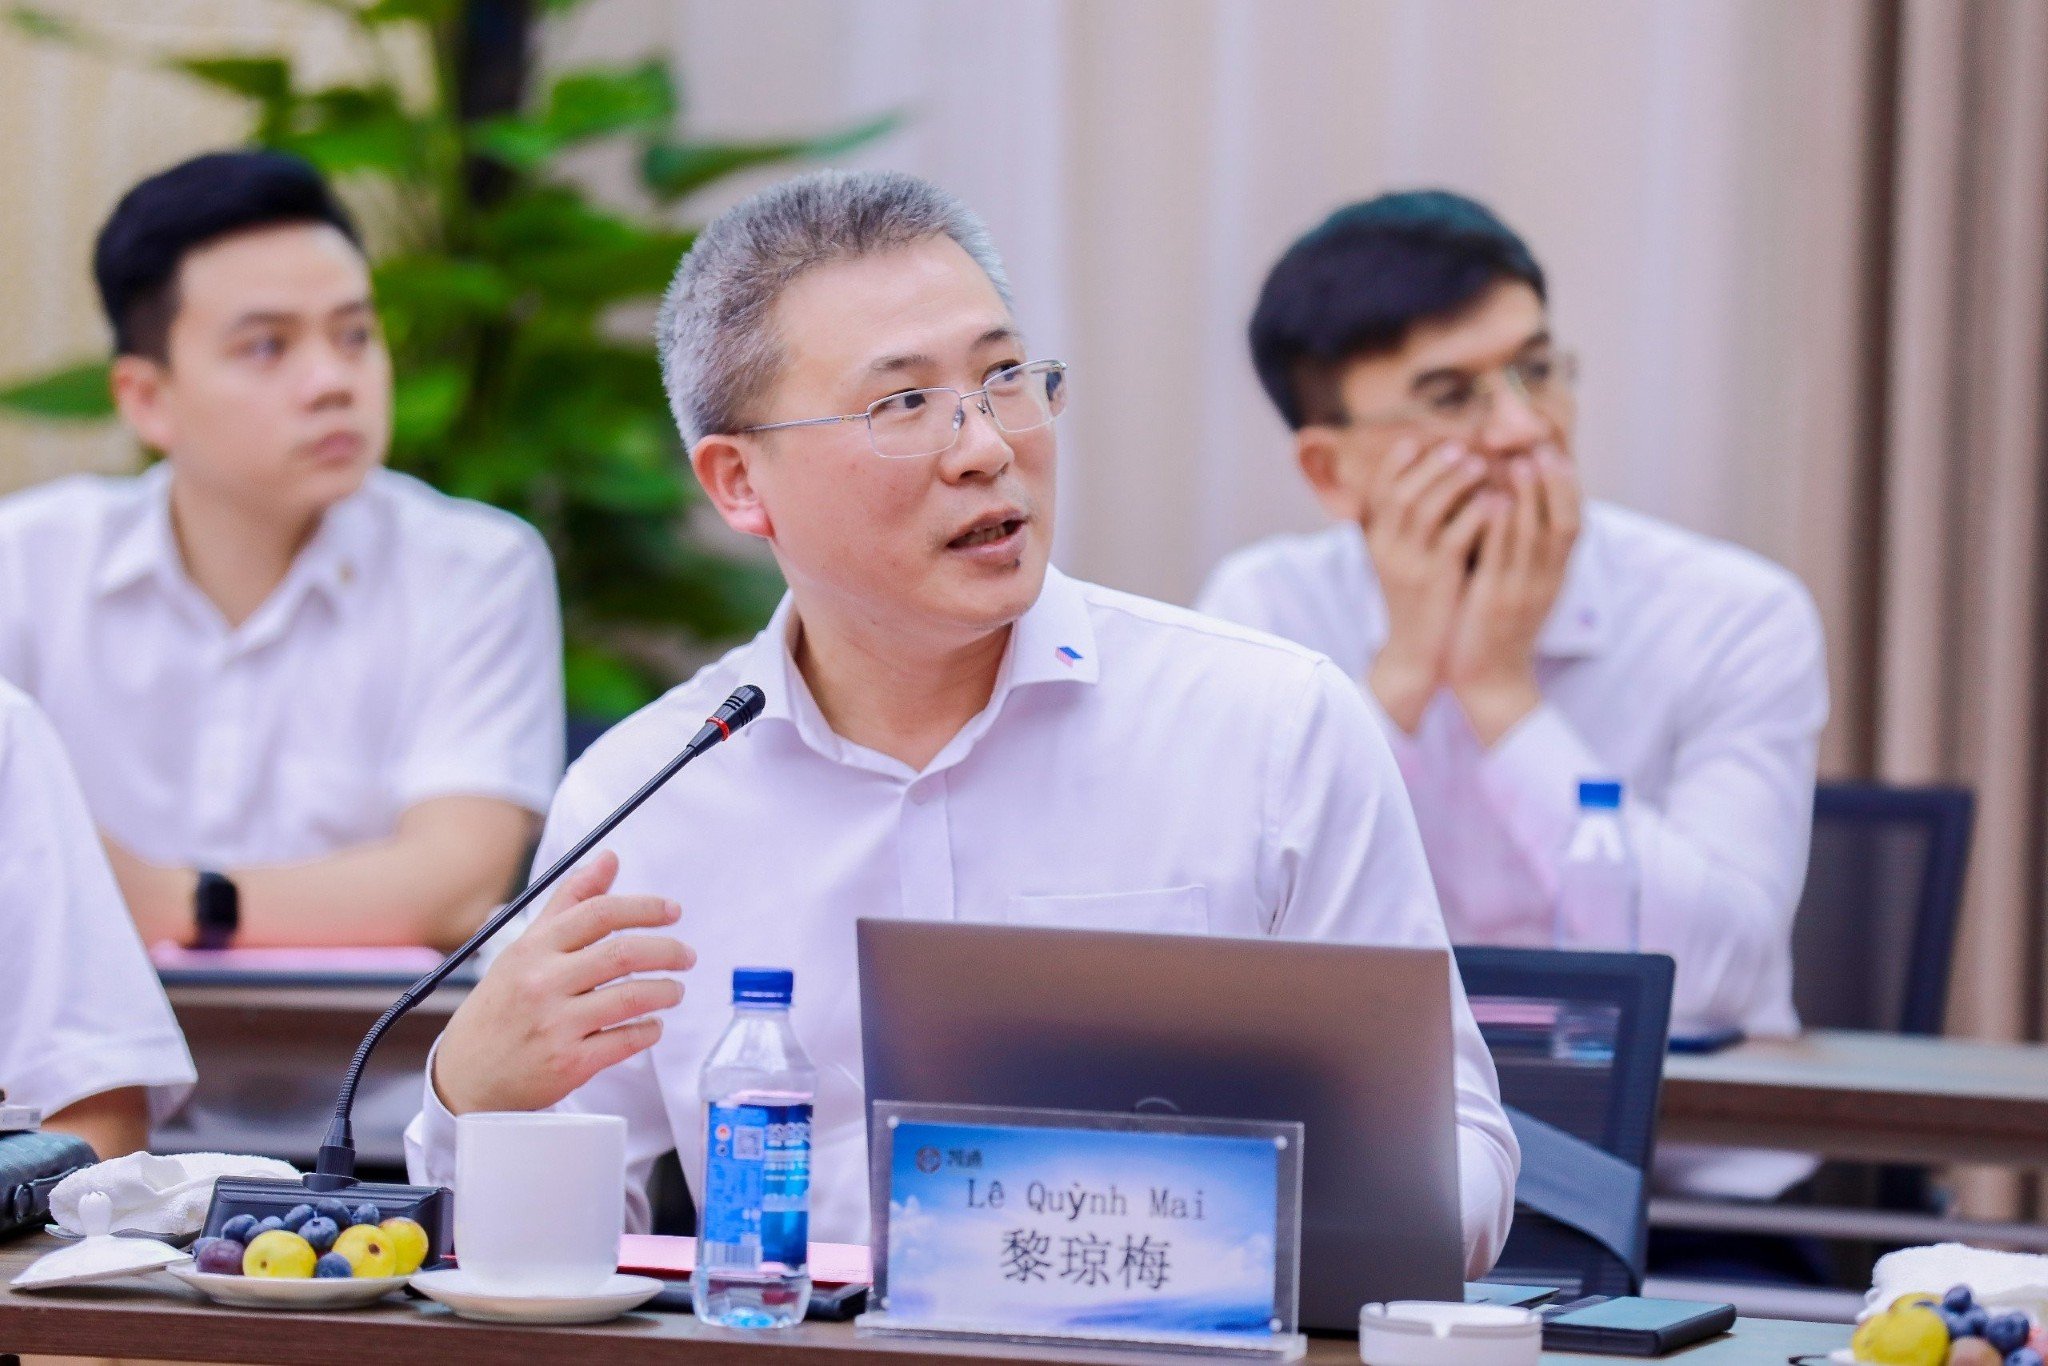 Ông Lê Quỳnh Mai kiến nghị trạm dừng nghỉ thiết kế theo nguyên lý môi trường hài hoà, bền vững, sáng tạo và linh hoạt, hướng tới được vận hành bằng công nghệ thông tin